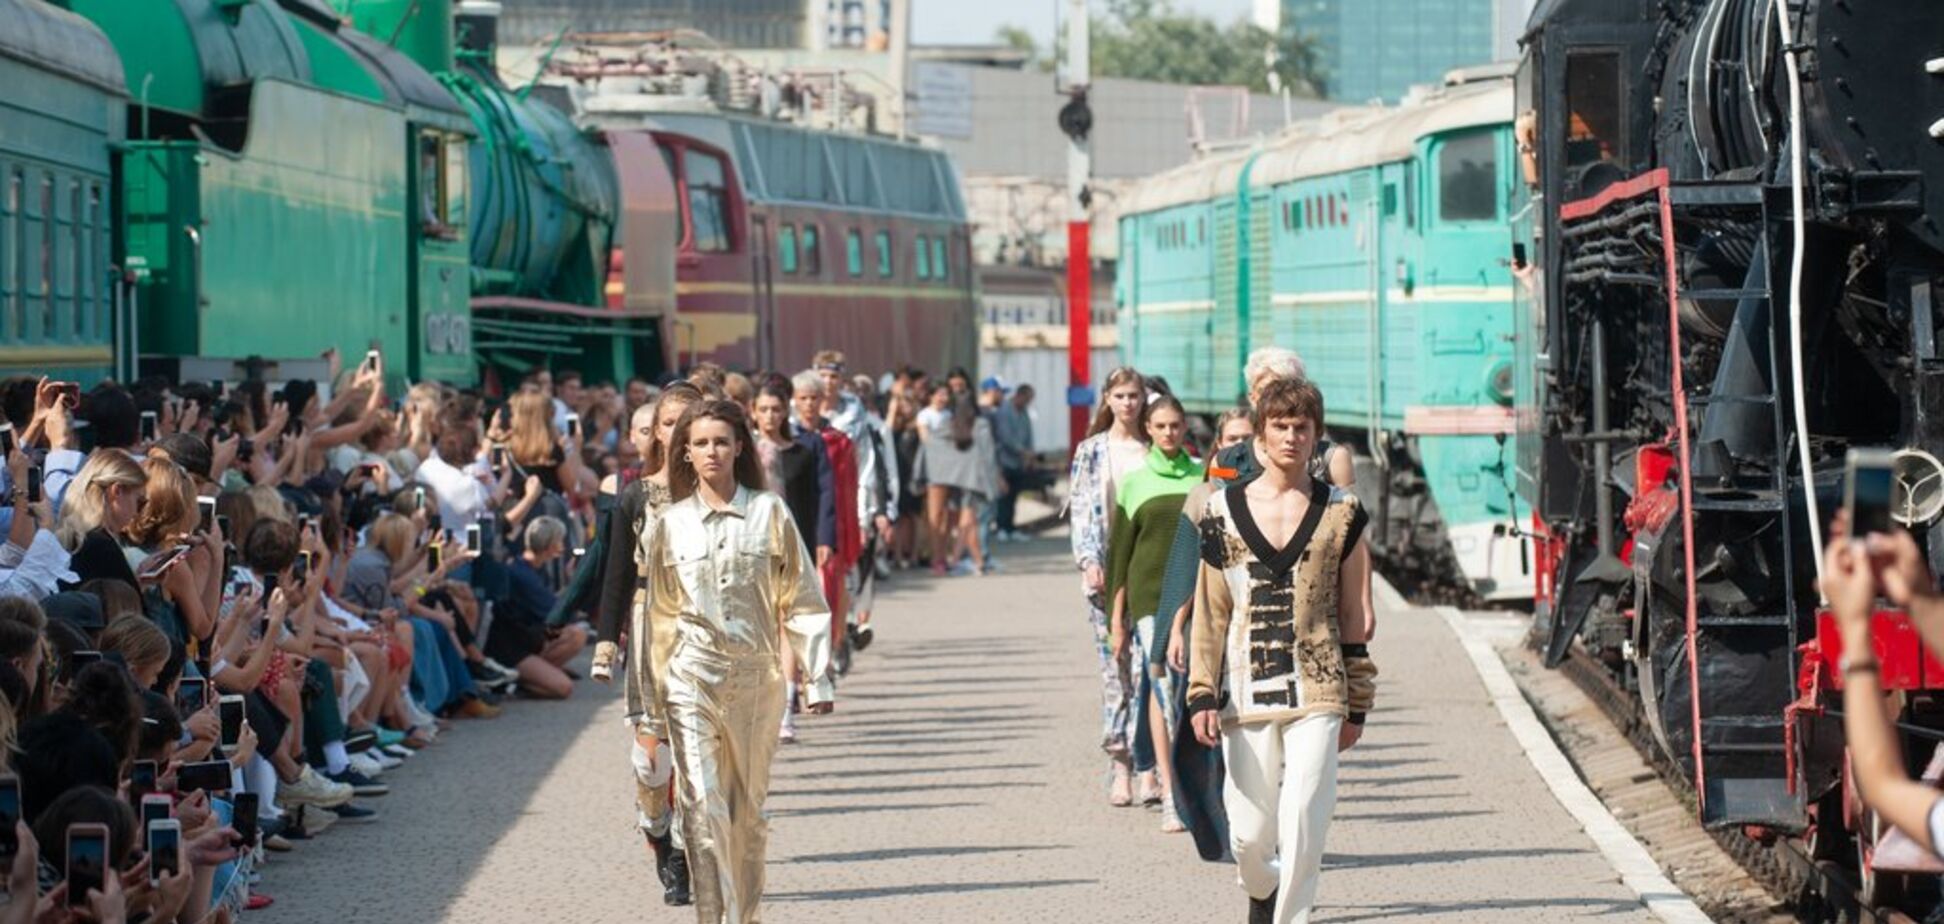 Дефіле між поїздів: в Києві влаштували креативний модний показ